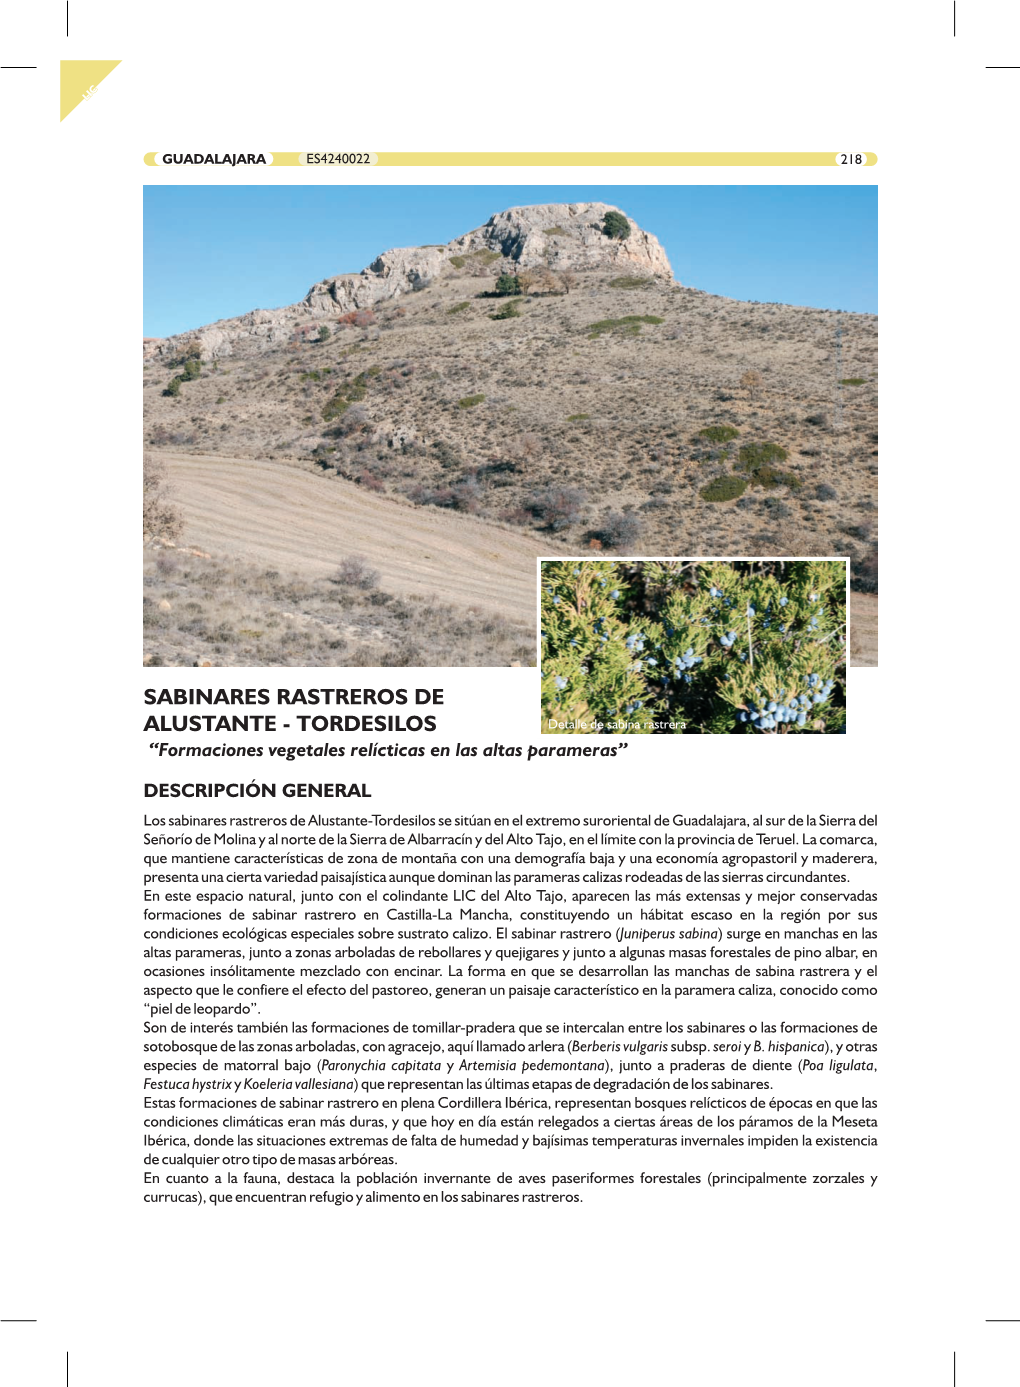 SABINARES RASTREROS DE ALUSTANTE - TORDESILOS Detalle De Sabina Rastrera “Formaciones Vegetales Relícticas En Las Altas Parameras”